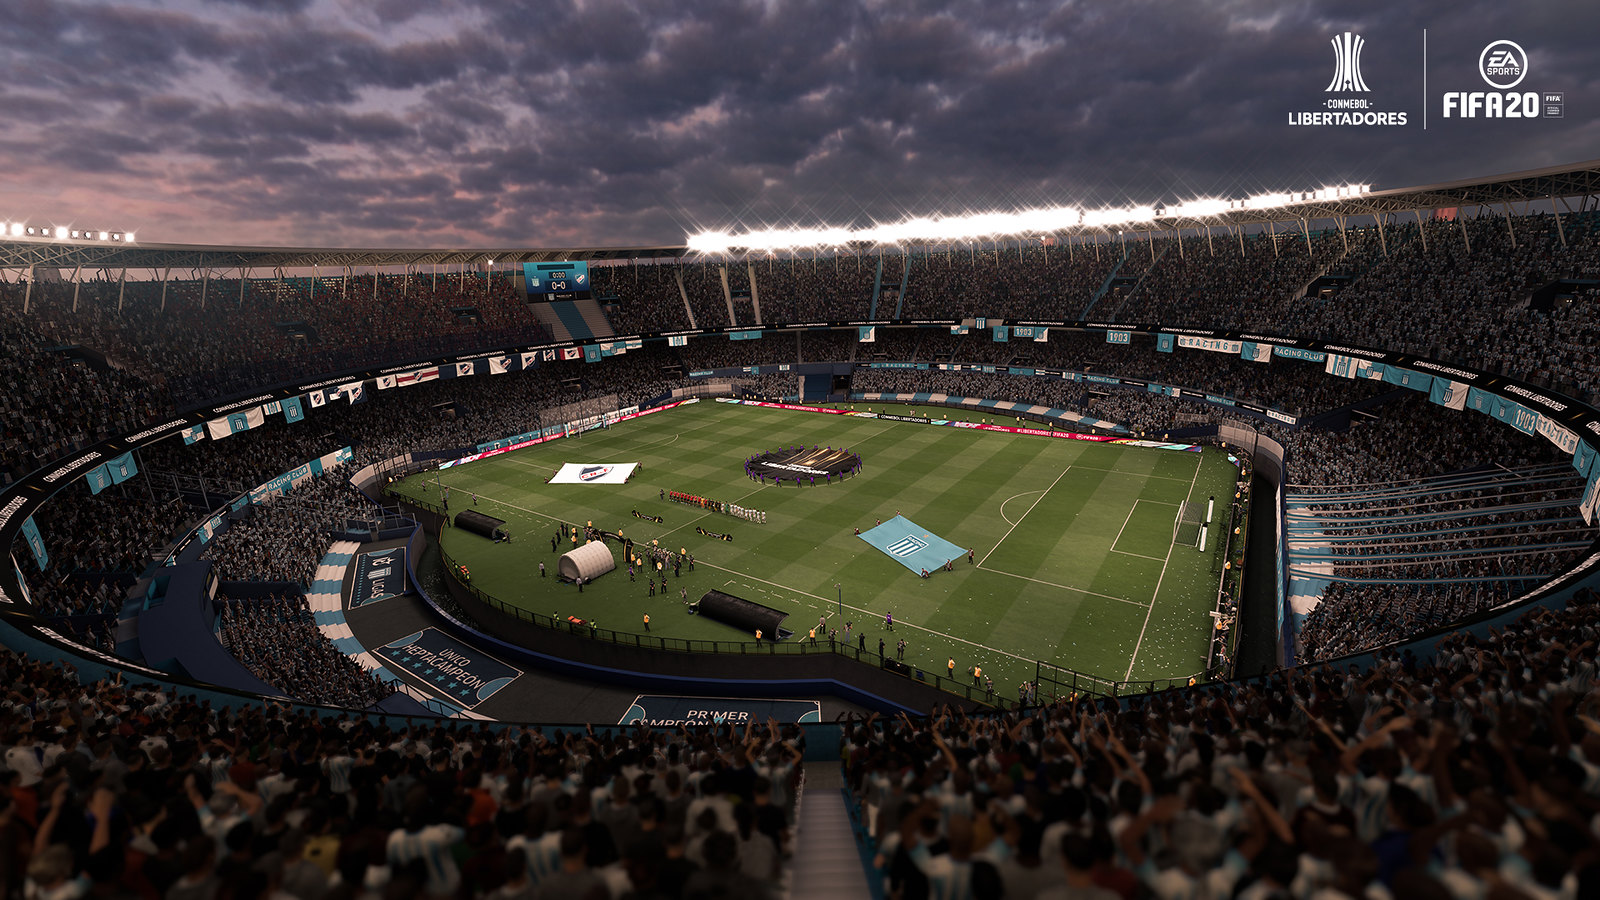 FIFA 20 - Conmebol Libertadores